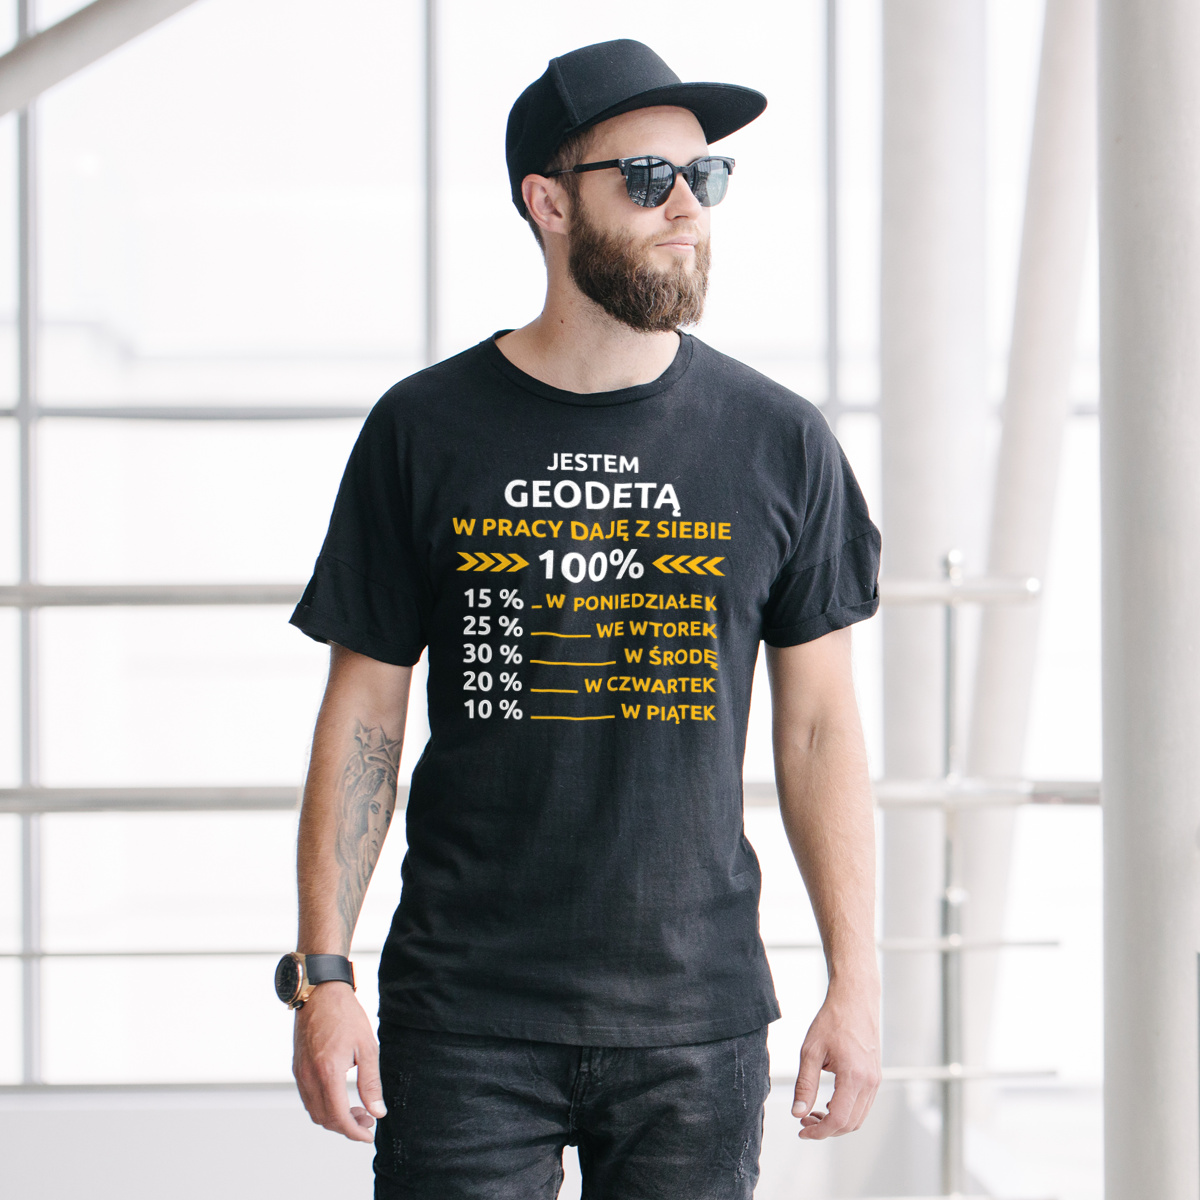 geodeta w pracy daje z siebie 100%  - Męska Koszulka Czarna